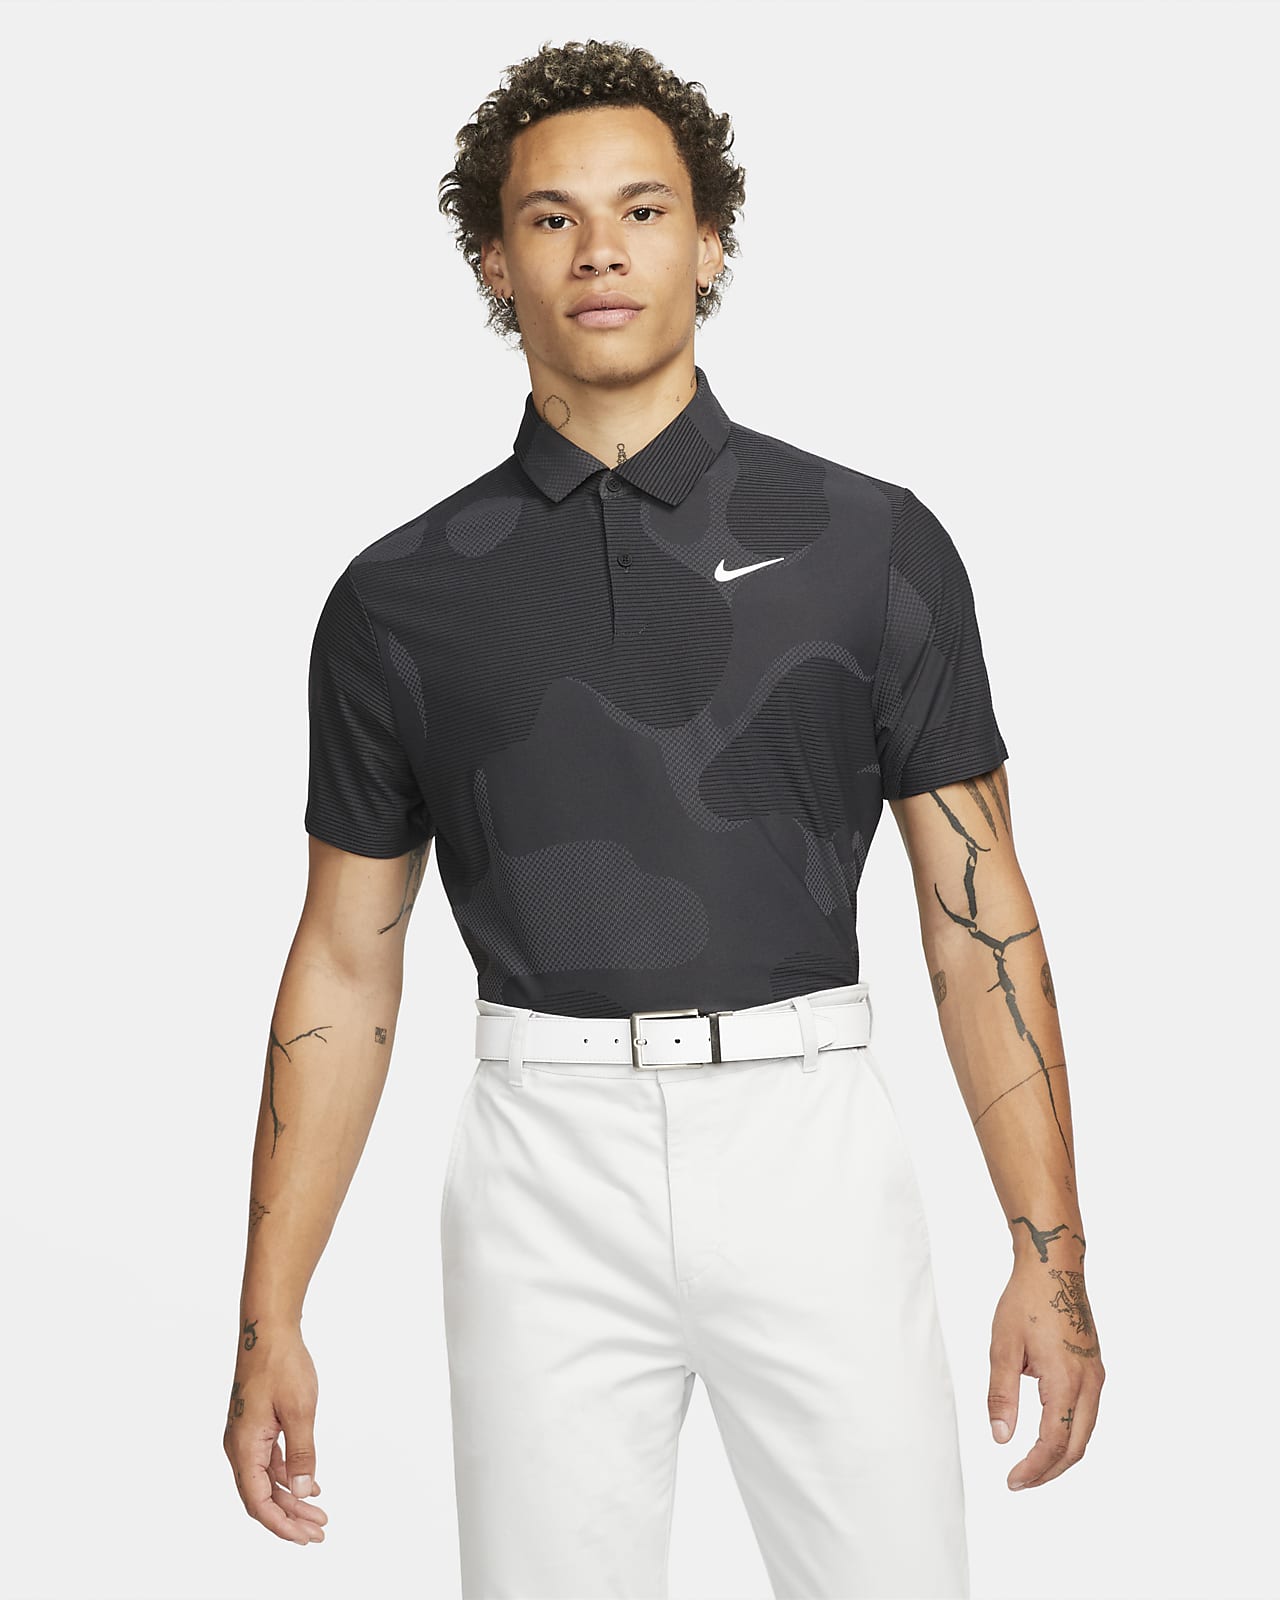 Nike Dri-FIT ADV Tour terepmintás férfi golfpóló